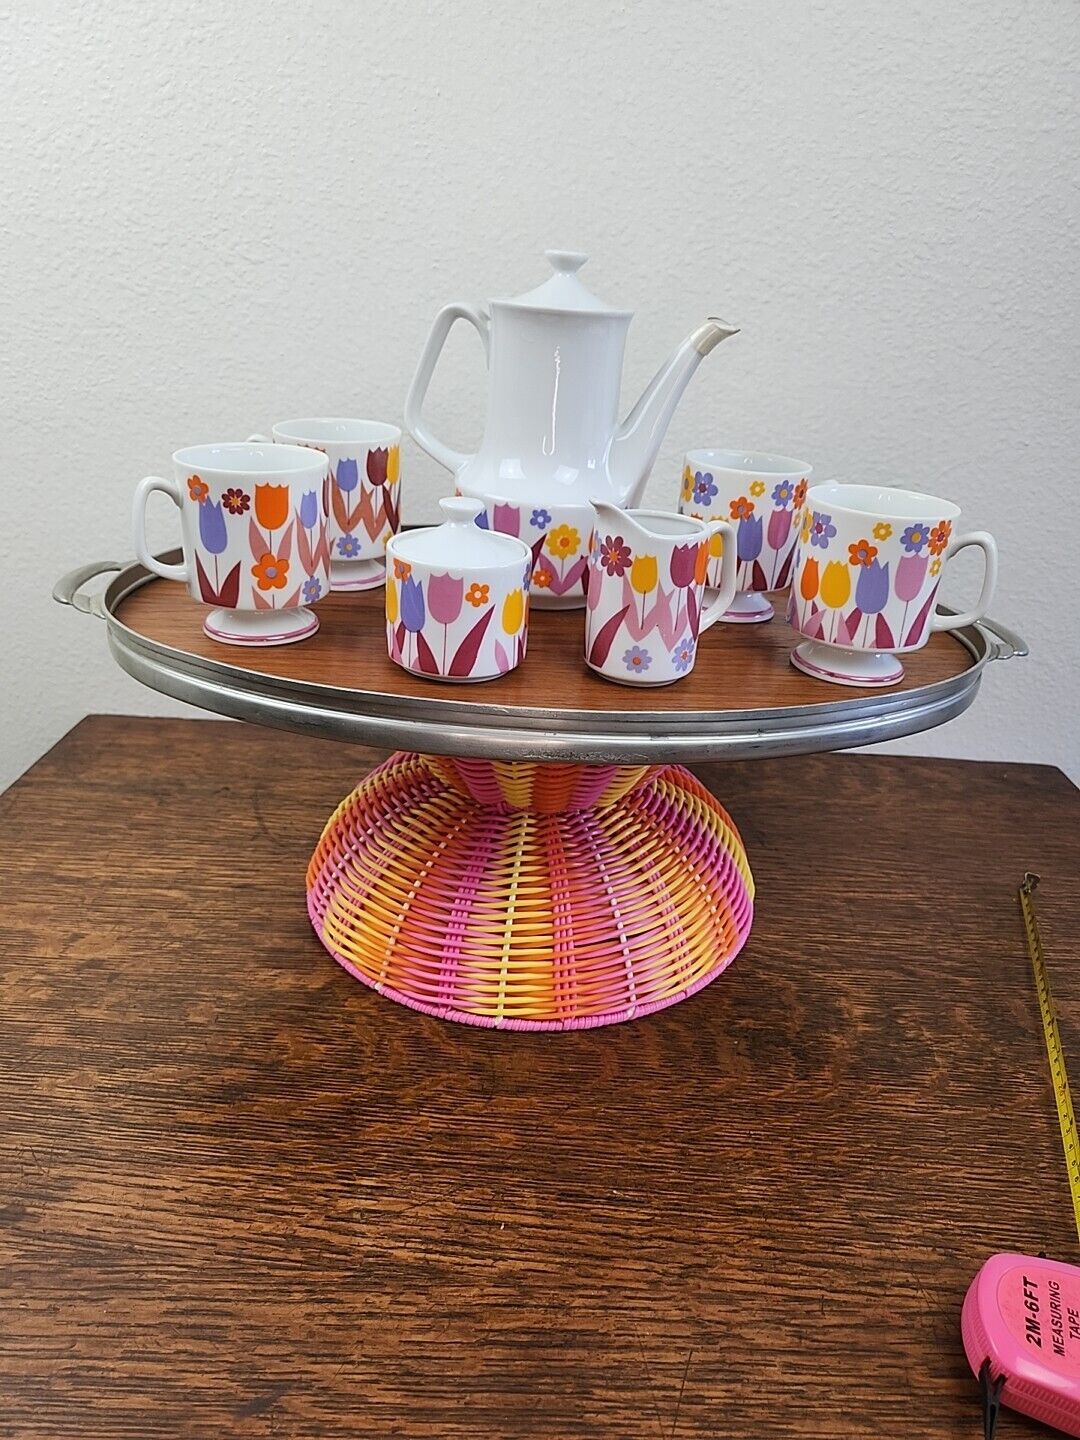 Rare Vintage MCM Enesco Ceramic Tea Or Coffee Set Tulips Flowers 